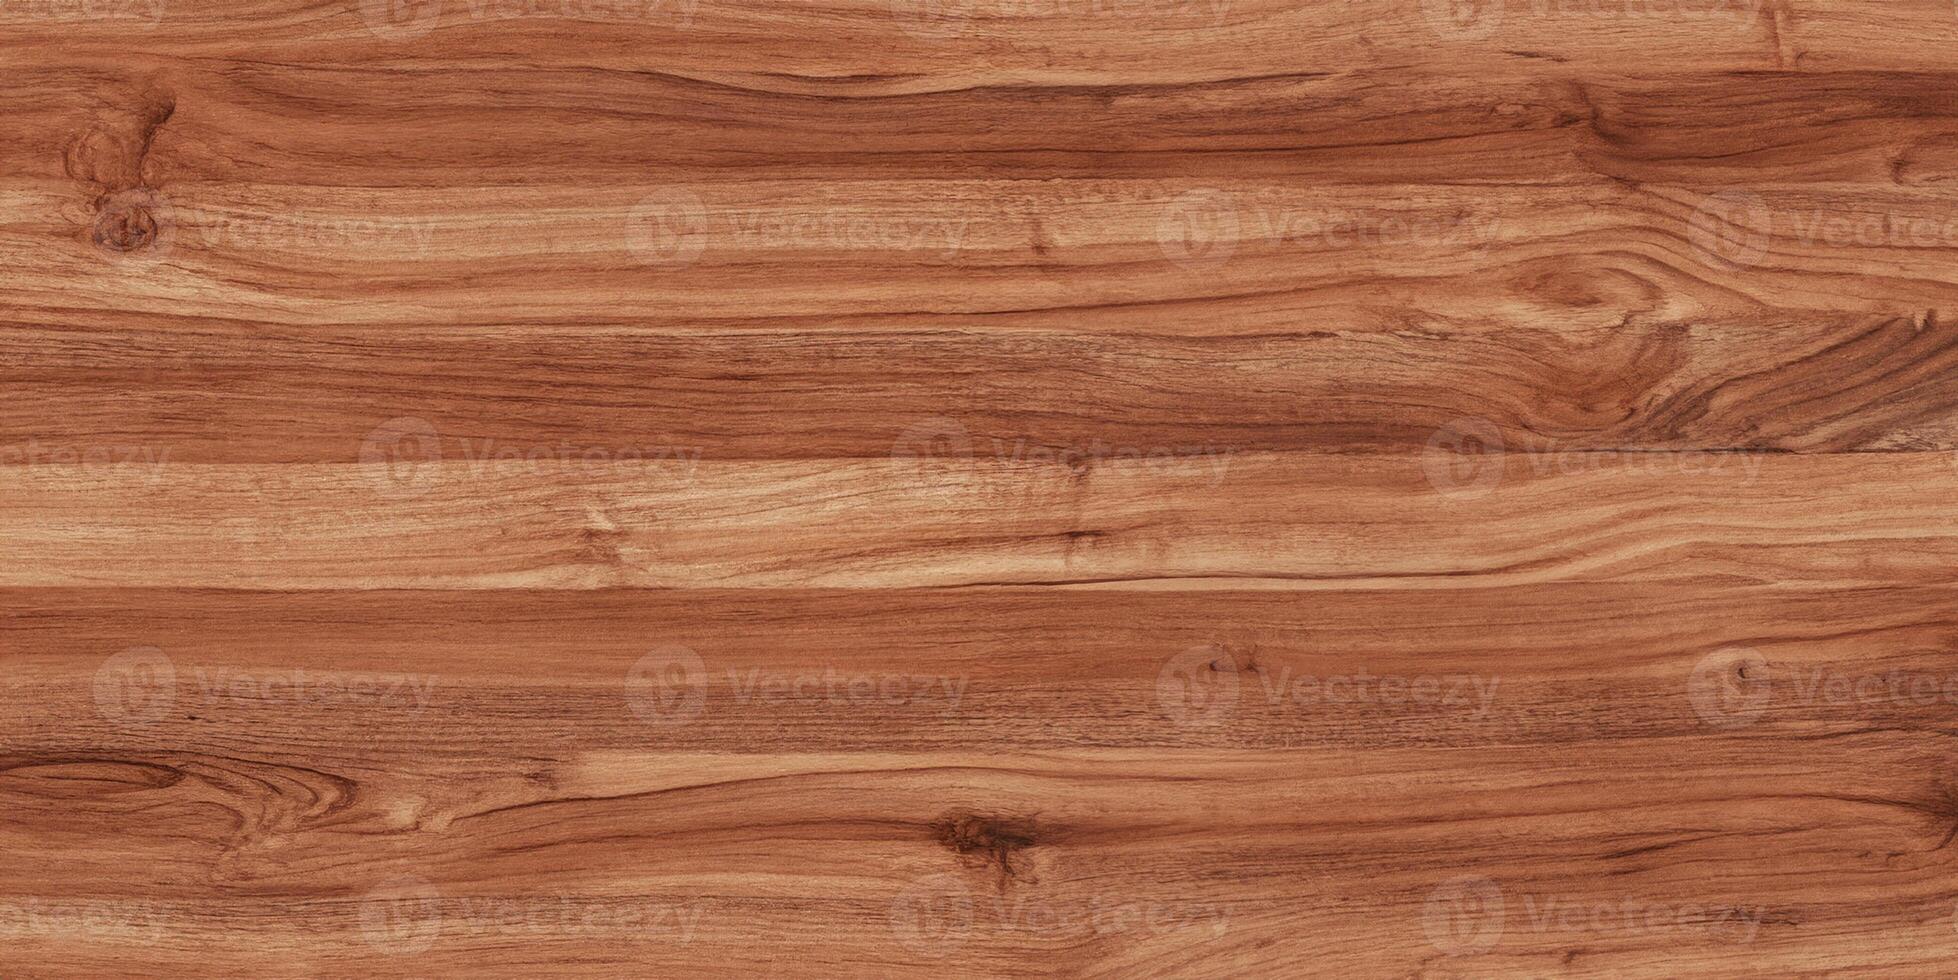 desatado agradável lindo madeira textura fundo foto